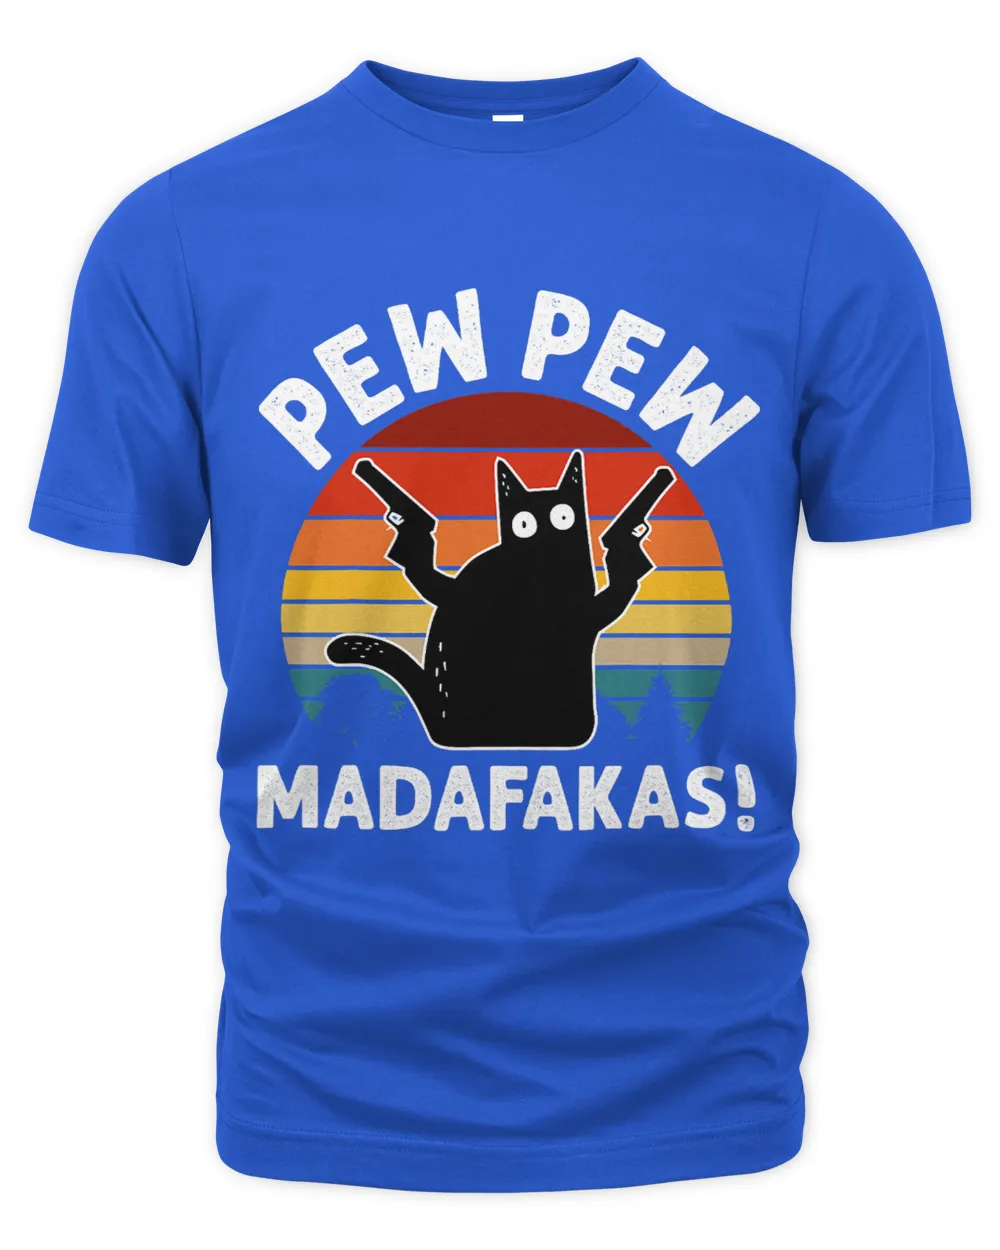 Vintage Retro Black Cat Pew Pew Madafakas